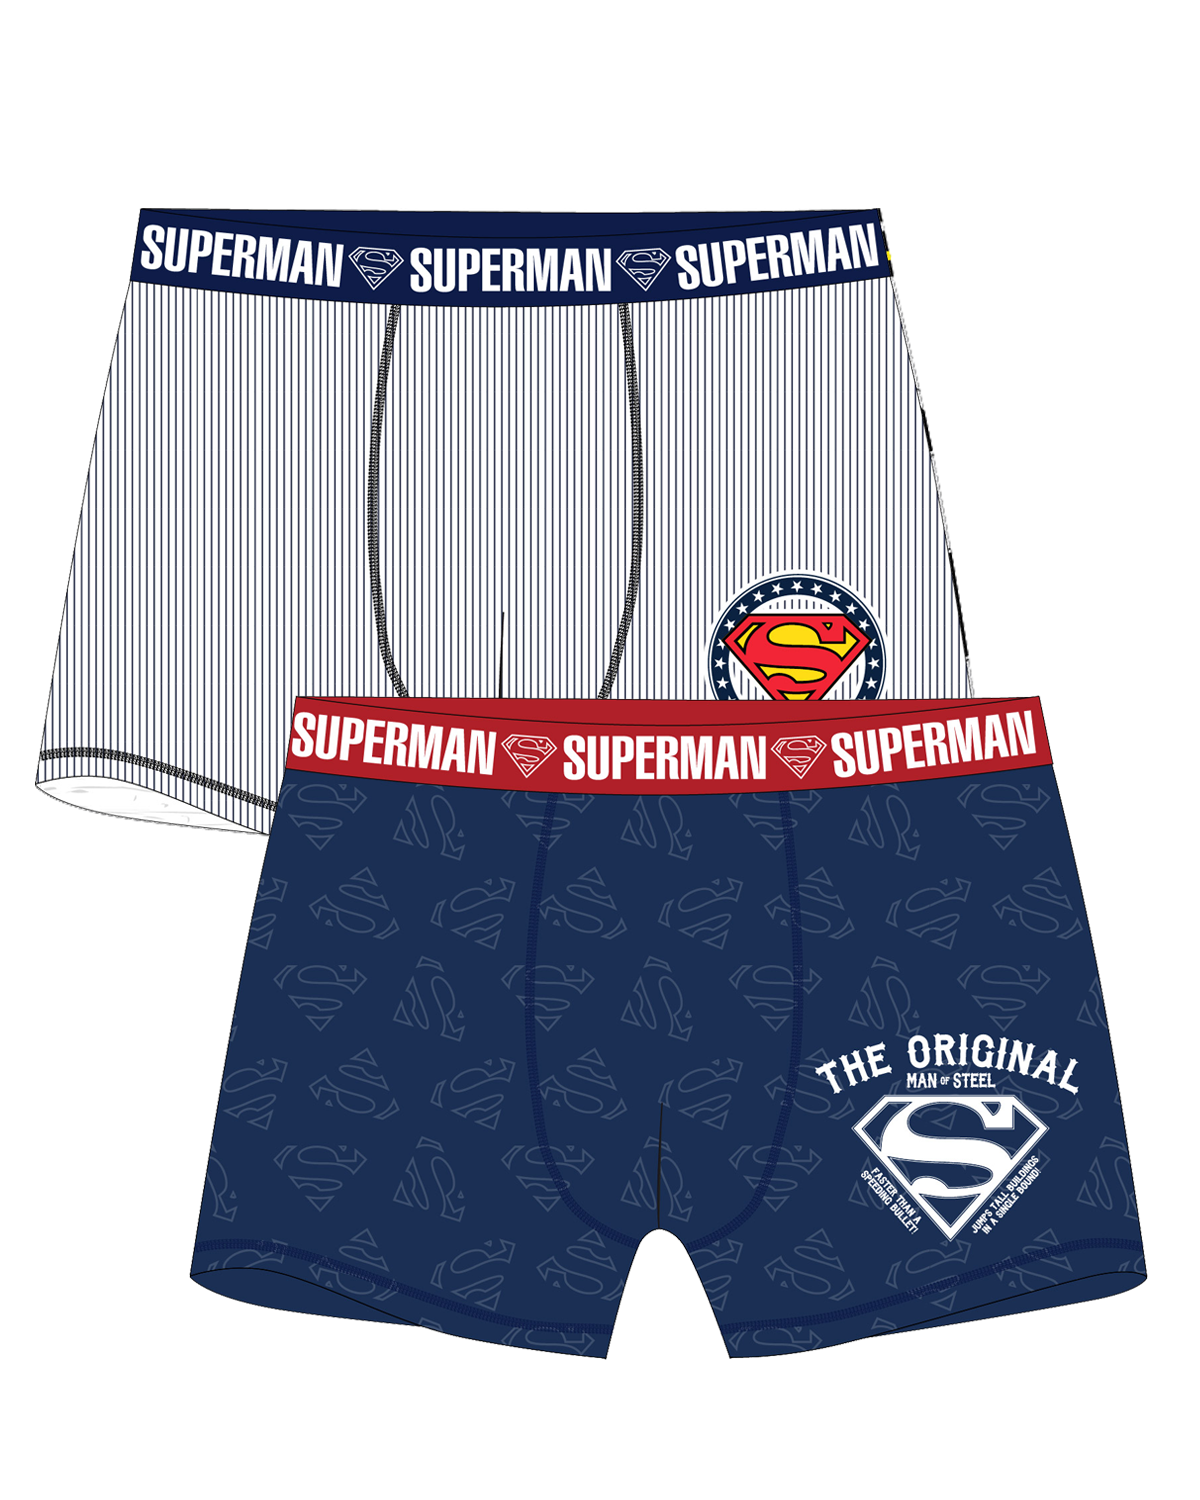 superman-licence Pánské boxerky - Superman 5333378, proužek / tmavě modrá Barva: Mix barev, Velikost: M